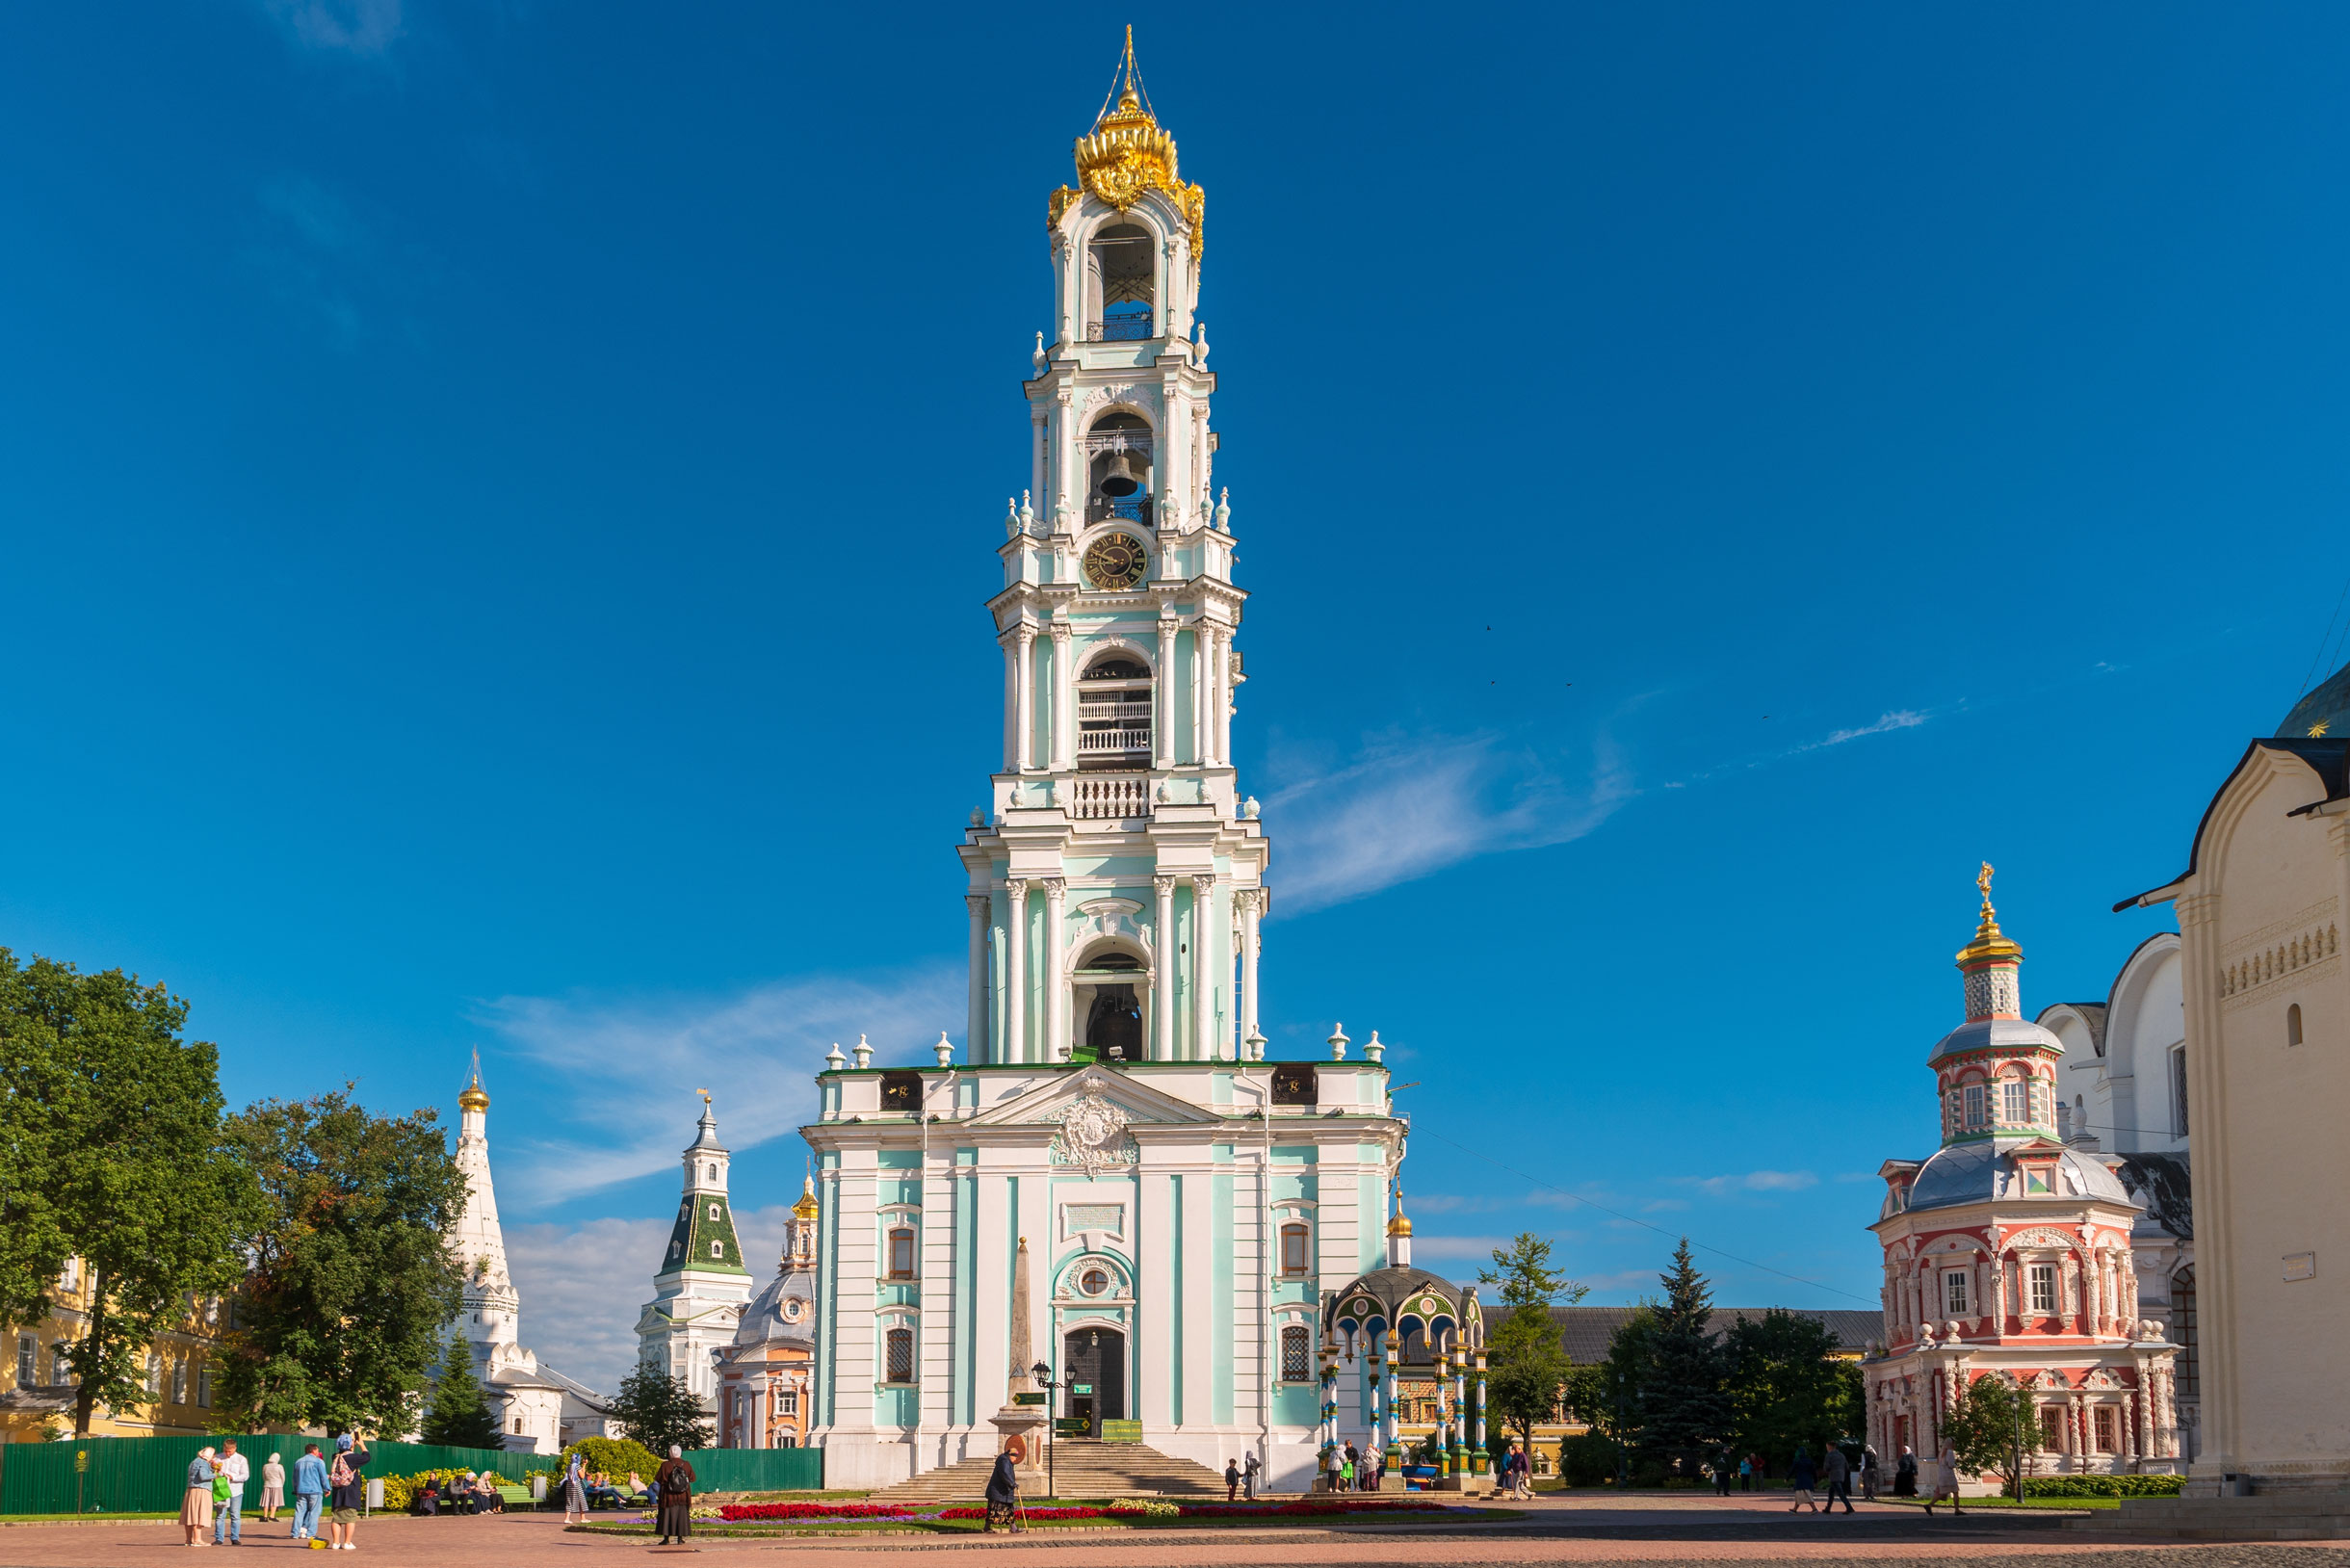 Высокая колокольня выглядит изящно. Фото: Stetiukha Kristina / Shutterstock